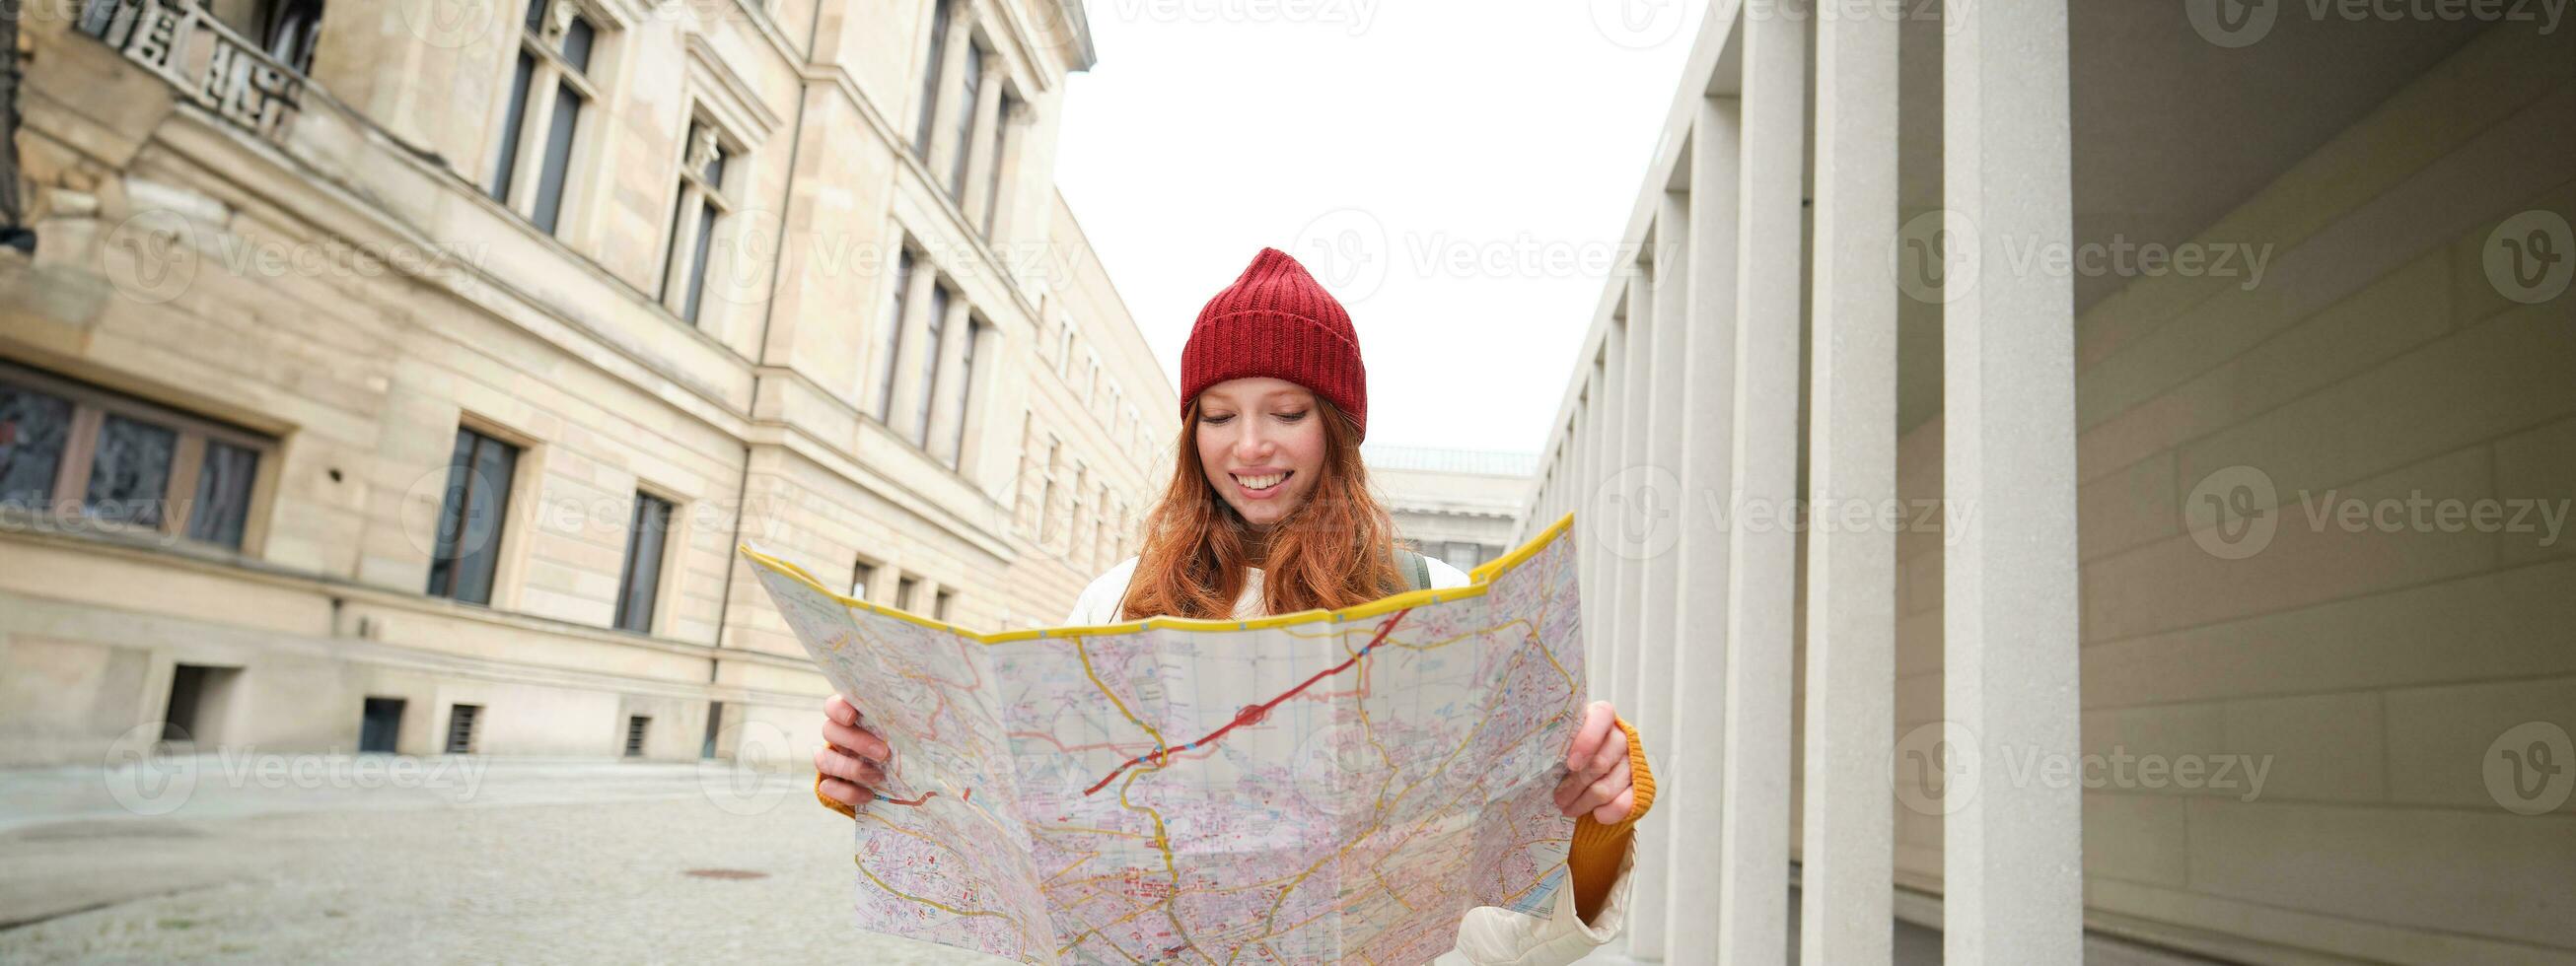 Rothaarige Mädchen, Tourist erforscht Stadt, sieht aus beim Papier Karte zu finden Weg zum historisch Sehenswürdigkeiten, Frau auf ihr Ausflug um Europa sucht zum Besichtigung foto